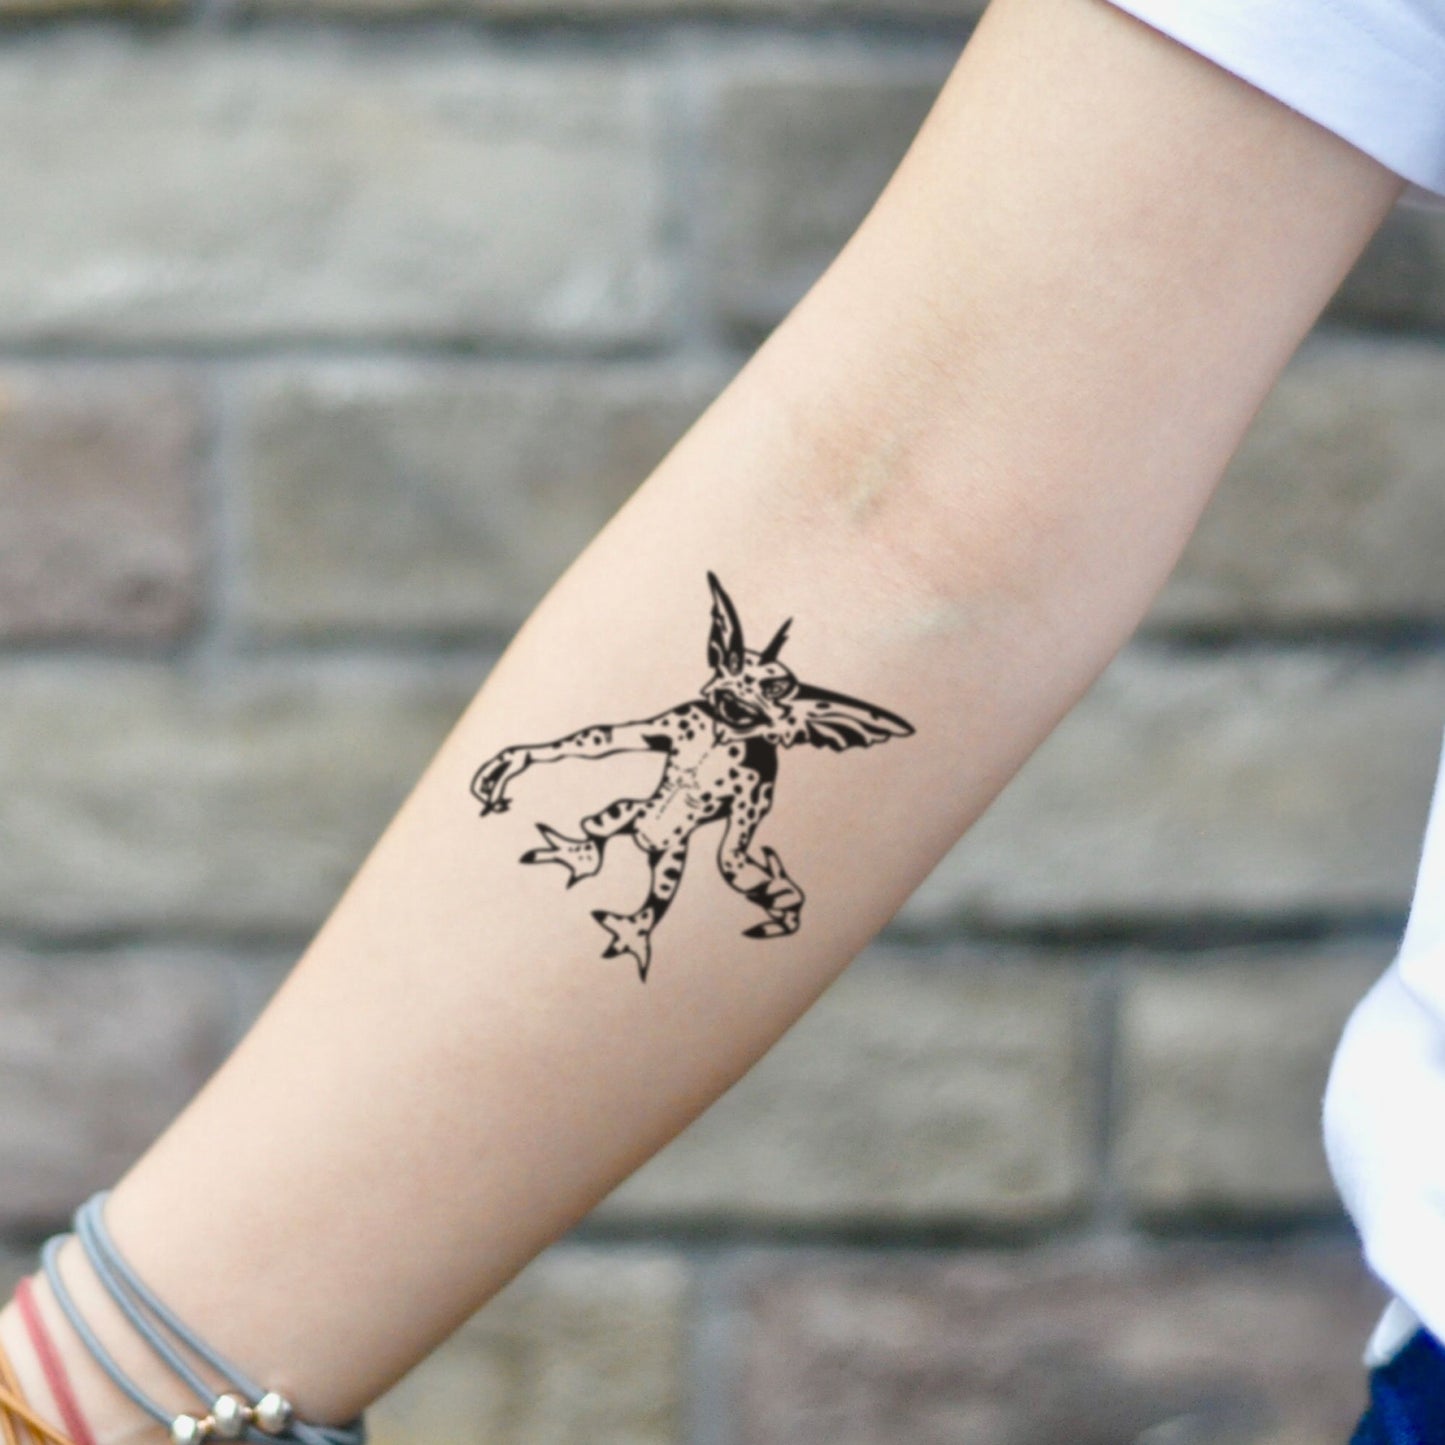 fake small gremlin illustrative temporary tattoo sticker design idea on inner arm